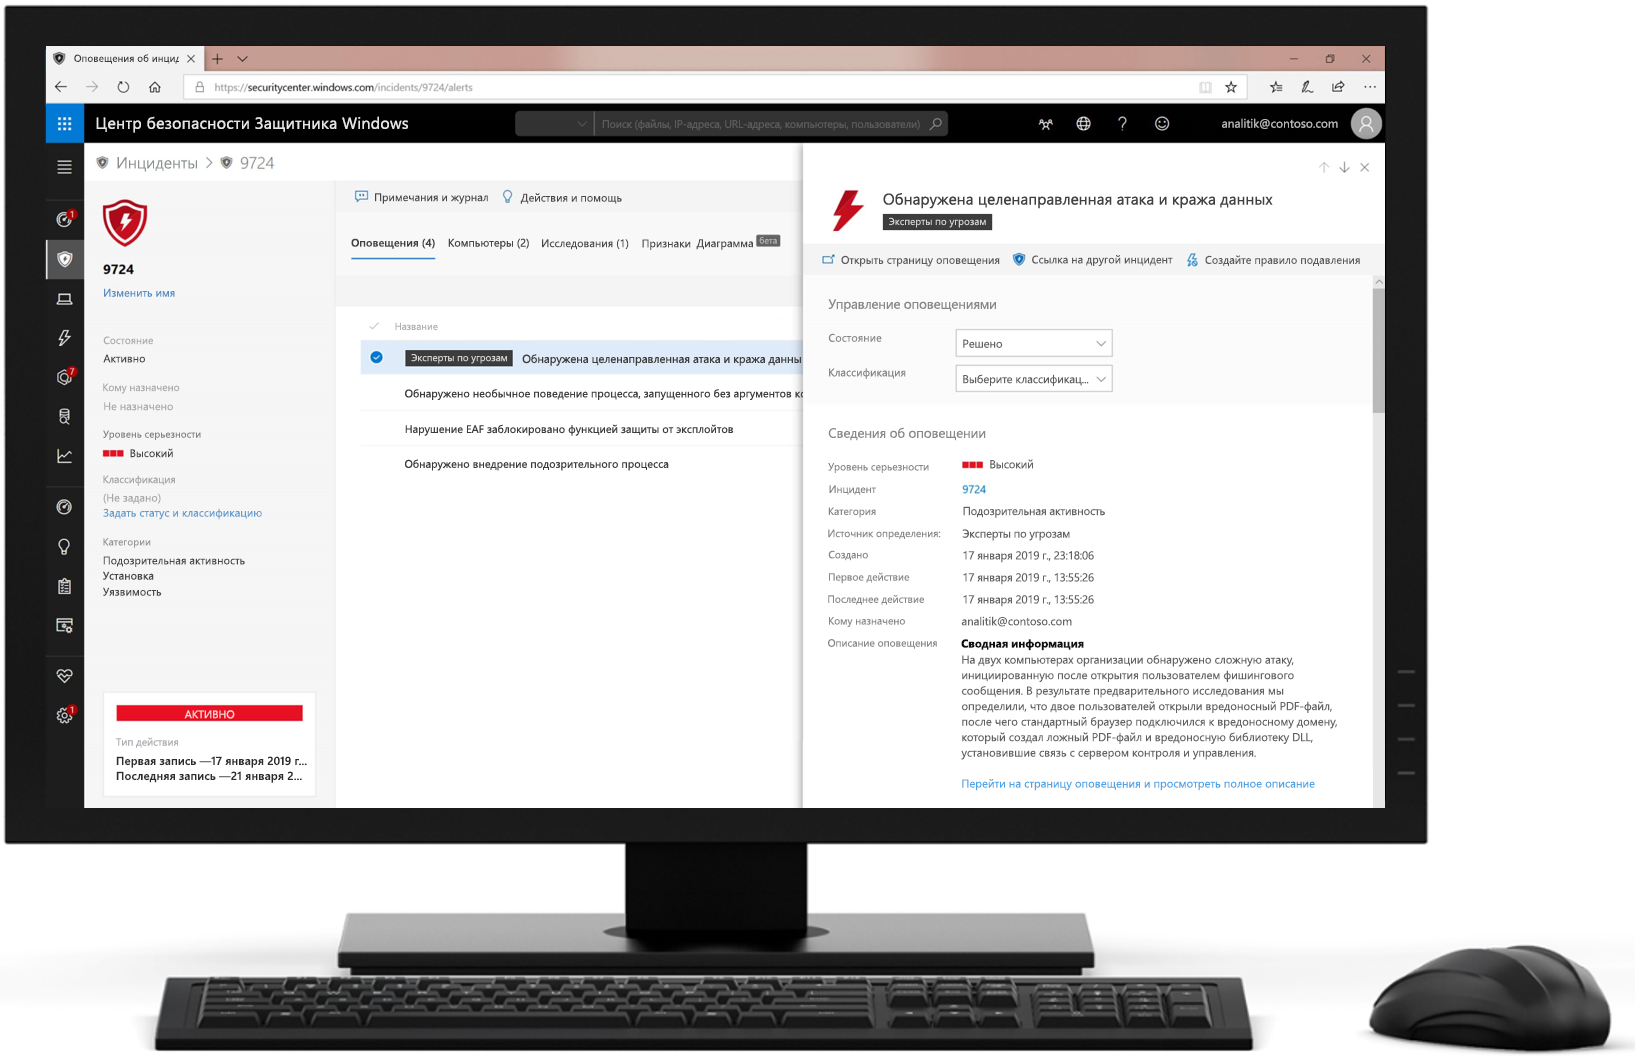 Изображение компьютера, на экране которого показан Центр безопасности Защитника Windows.